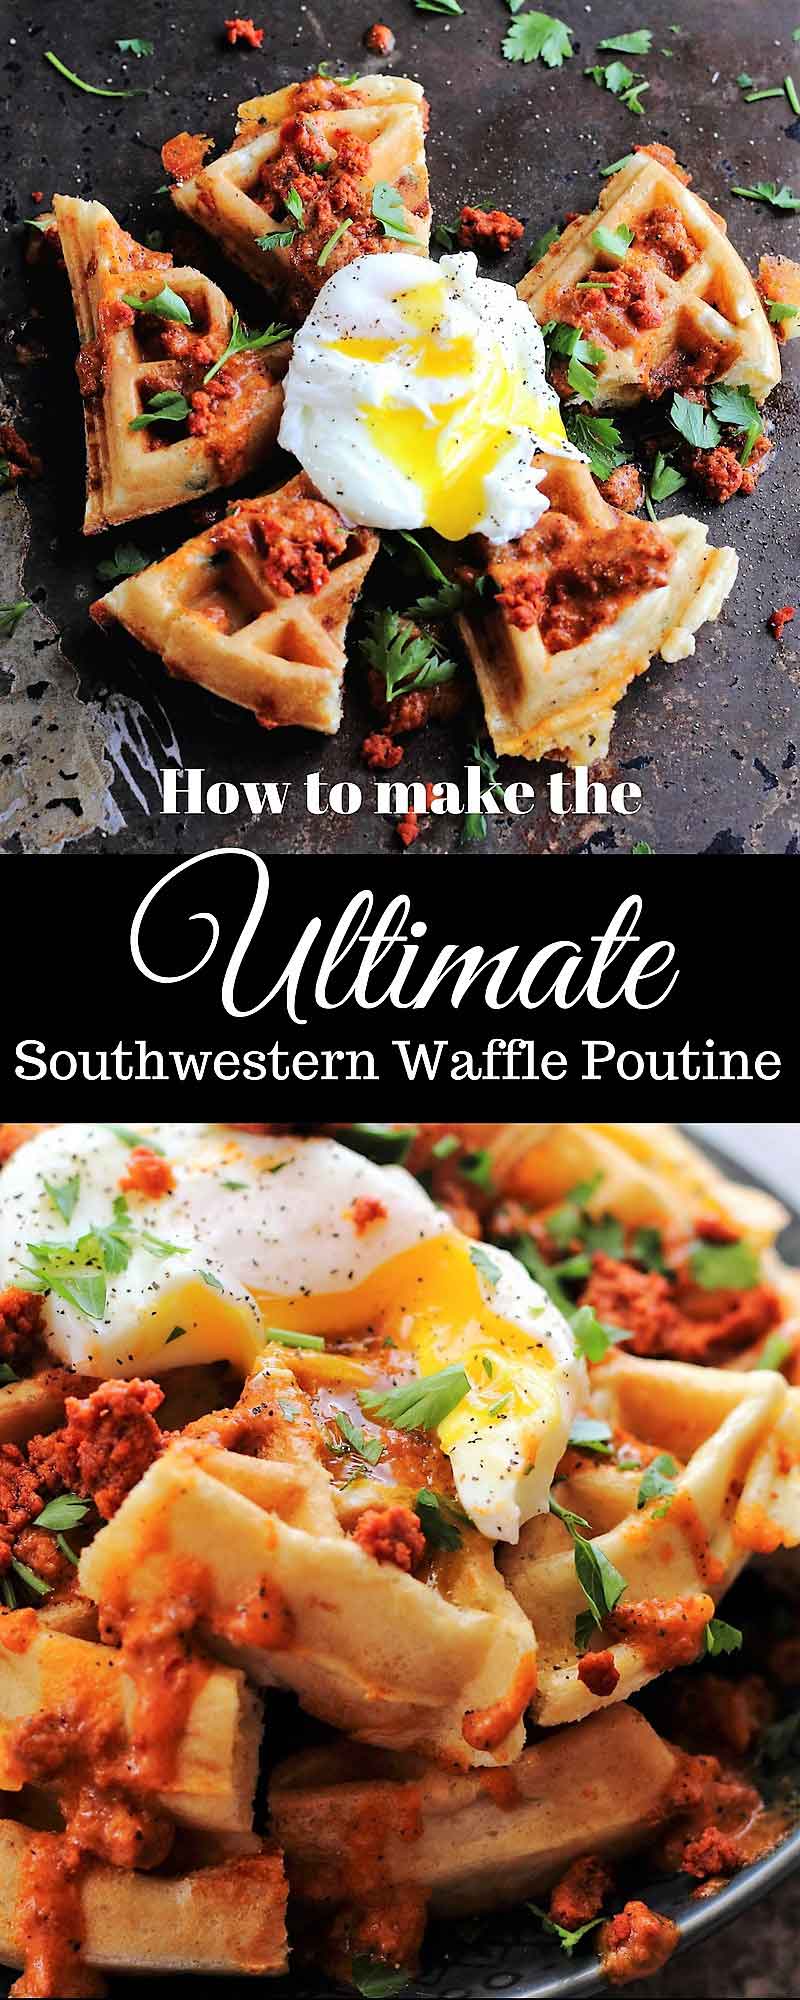 Fully loaded southwestern waffle poutine for national waffle day jalapeno cheddar chorizo egg parsley